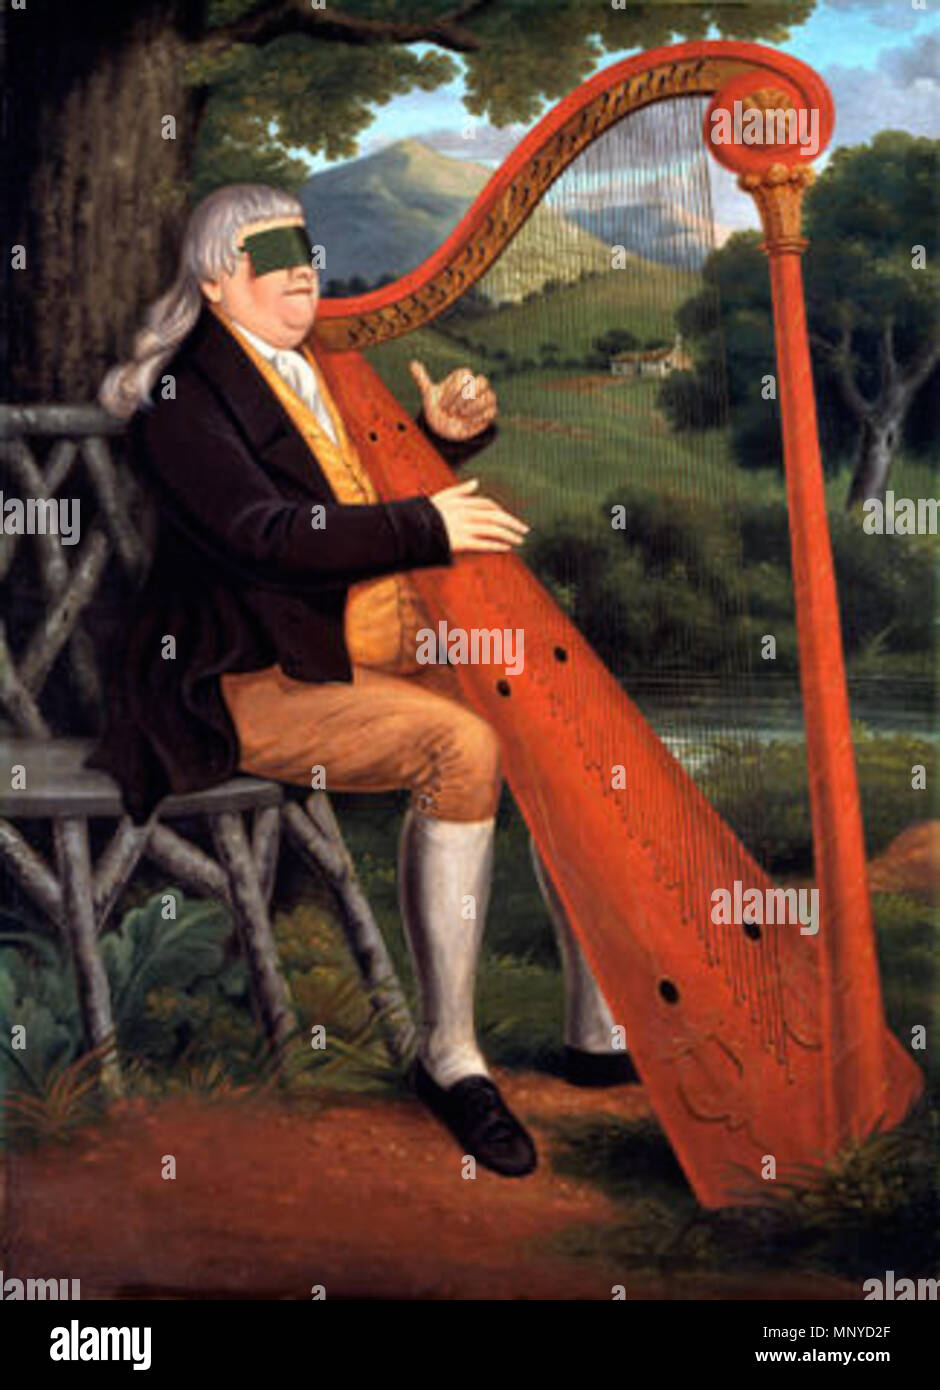 $$$-CHAPMAN UN532/9337T 300/A-0 . William Williams, 'Penmorfa" (1759-1828) Les aveugles William Williams (1759-1828) connu sous le nom de 'Penmorfa s' était harpiste à la famille Gwynne à Tregig près de Llandeilo. De nombreuses familles gallois a maintenu les harpistes. Le plus connu, John Parry (1710-1782), a été retenu par Sir Watkin Williams Wynn comme organiste et harpiste au Wynnstay à ?110 par an. Williams joue la harpe dans une position typiquement gallois à l'épaule gauche. La rédaction de l'instrument est irréaliste, surtout dans son système d'enfilage. L'artiste qui a signé cette photo peut être le J Chapm Banque D'Images